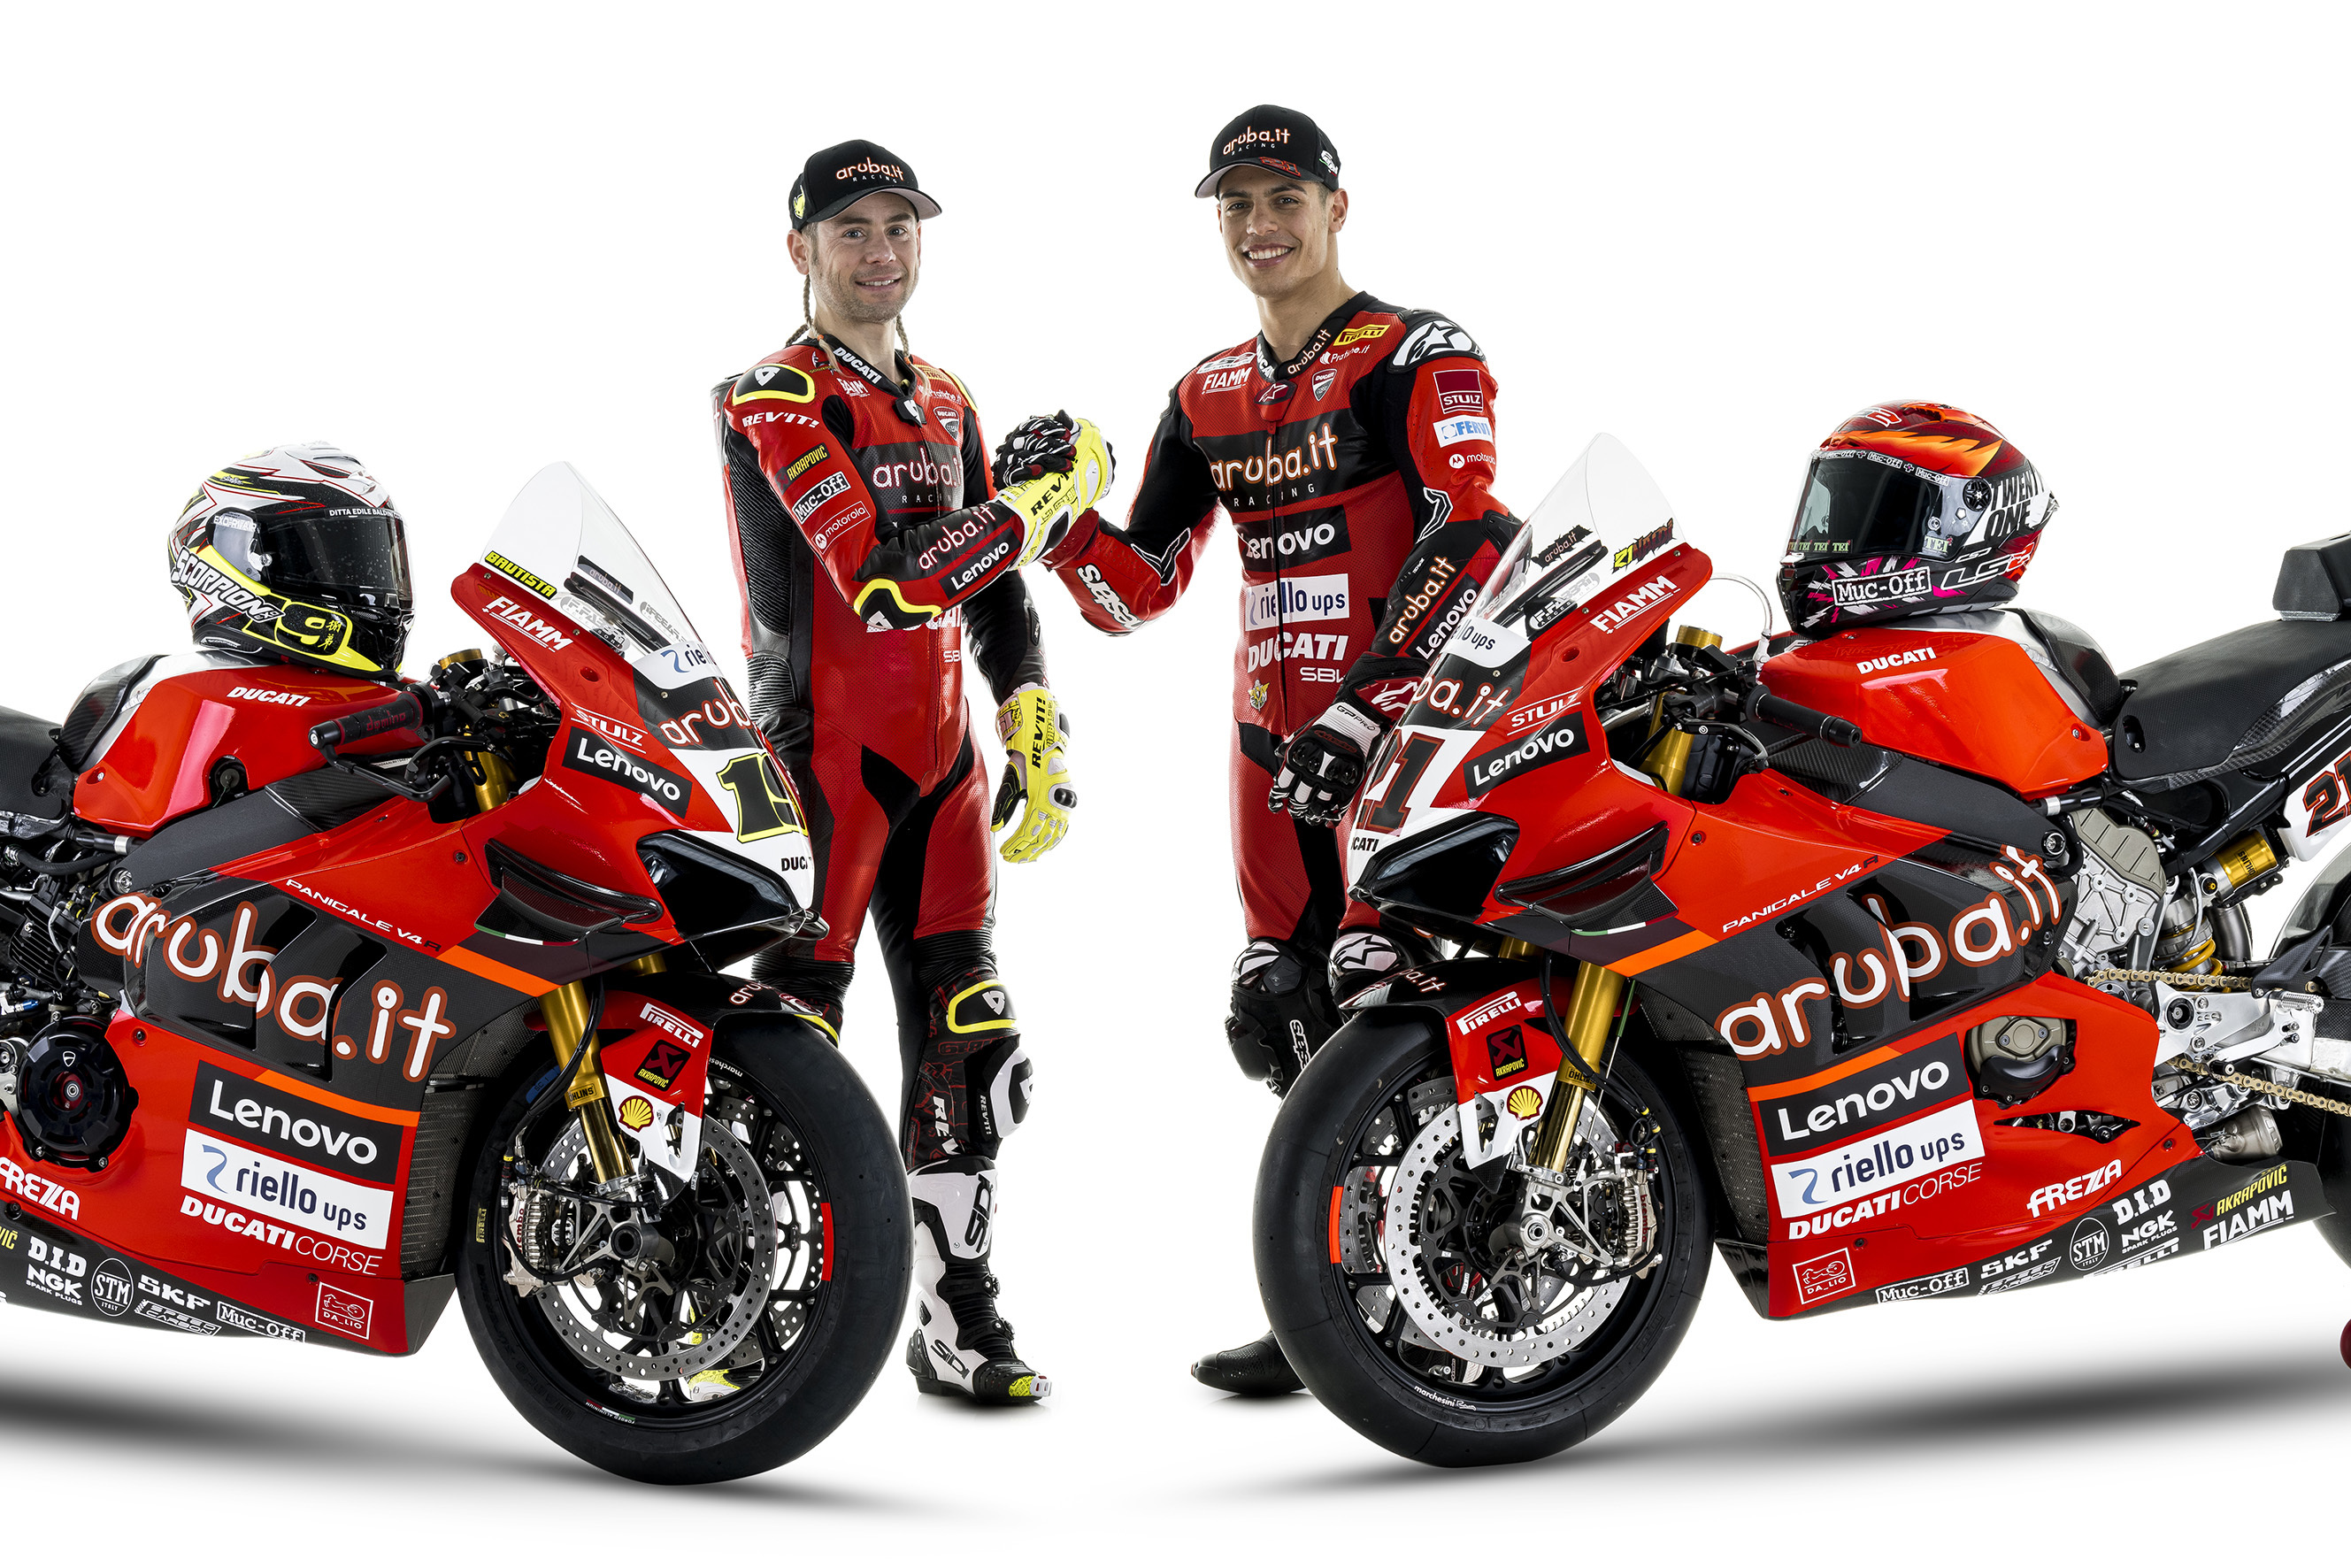 Riello UPS e Aruba.it Racing – Ducati Team, una sponsorship a tutto campo